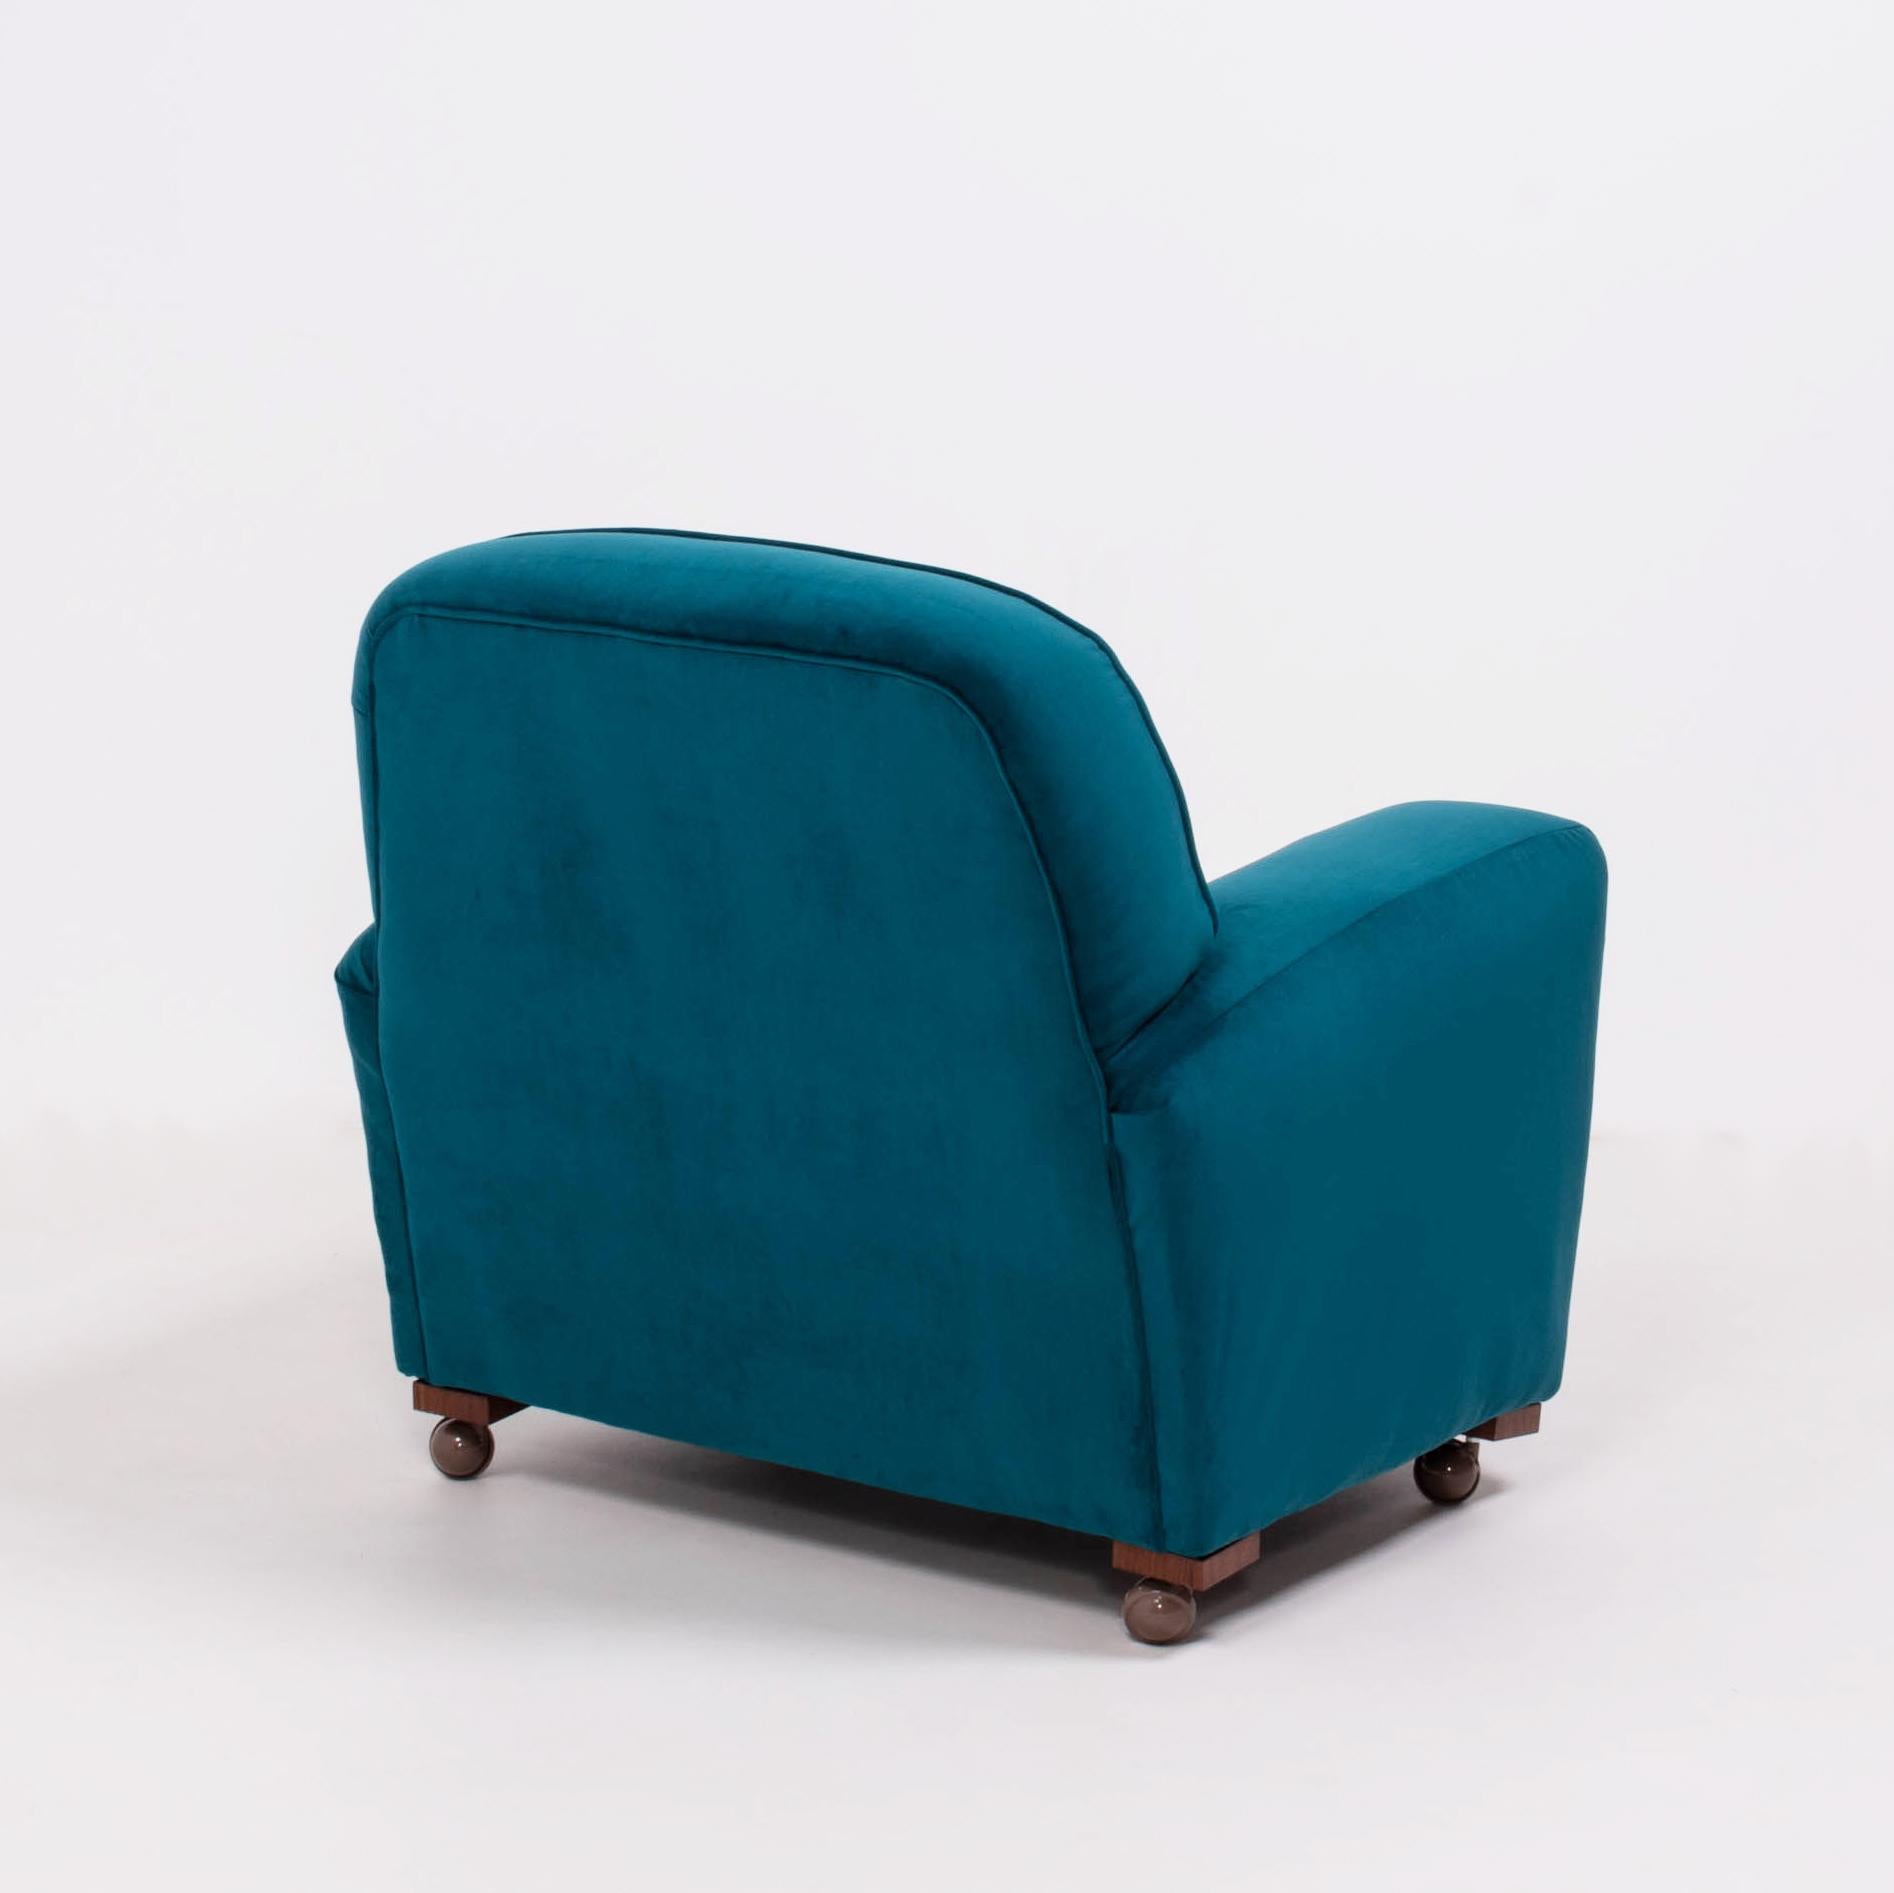 Mid-20th Century 1930s Art Deco Curved Blue Teal Velvet Armchair